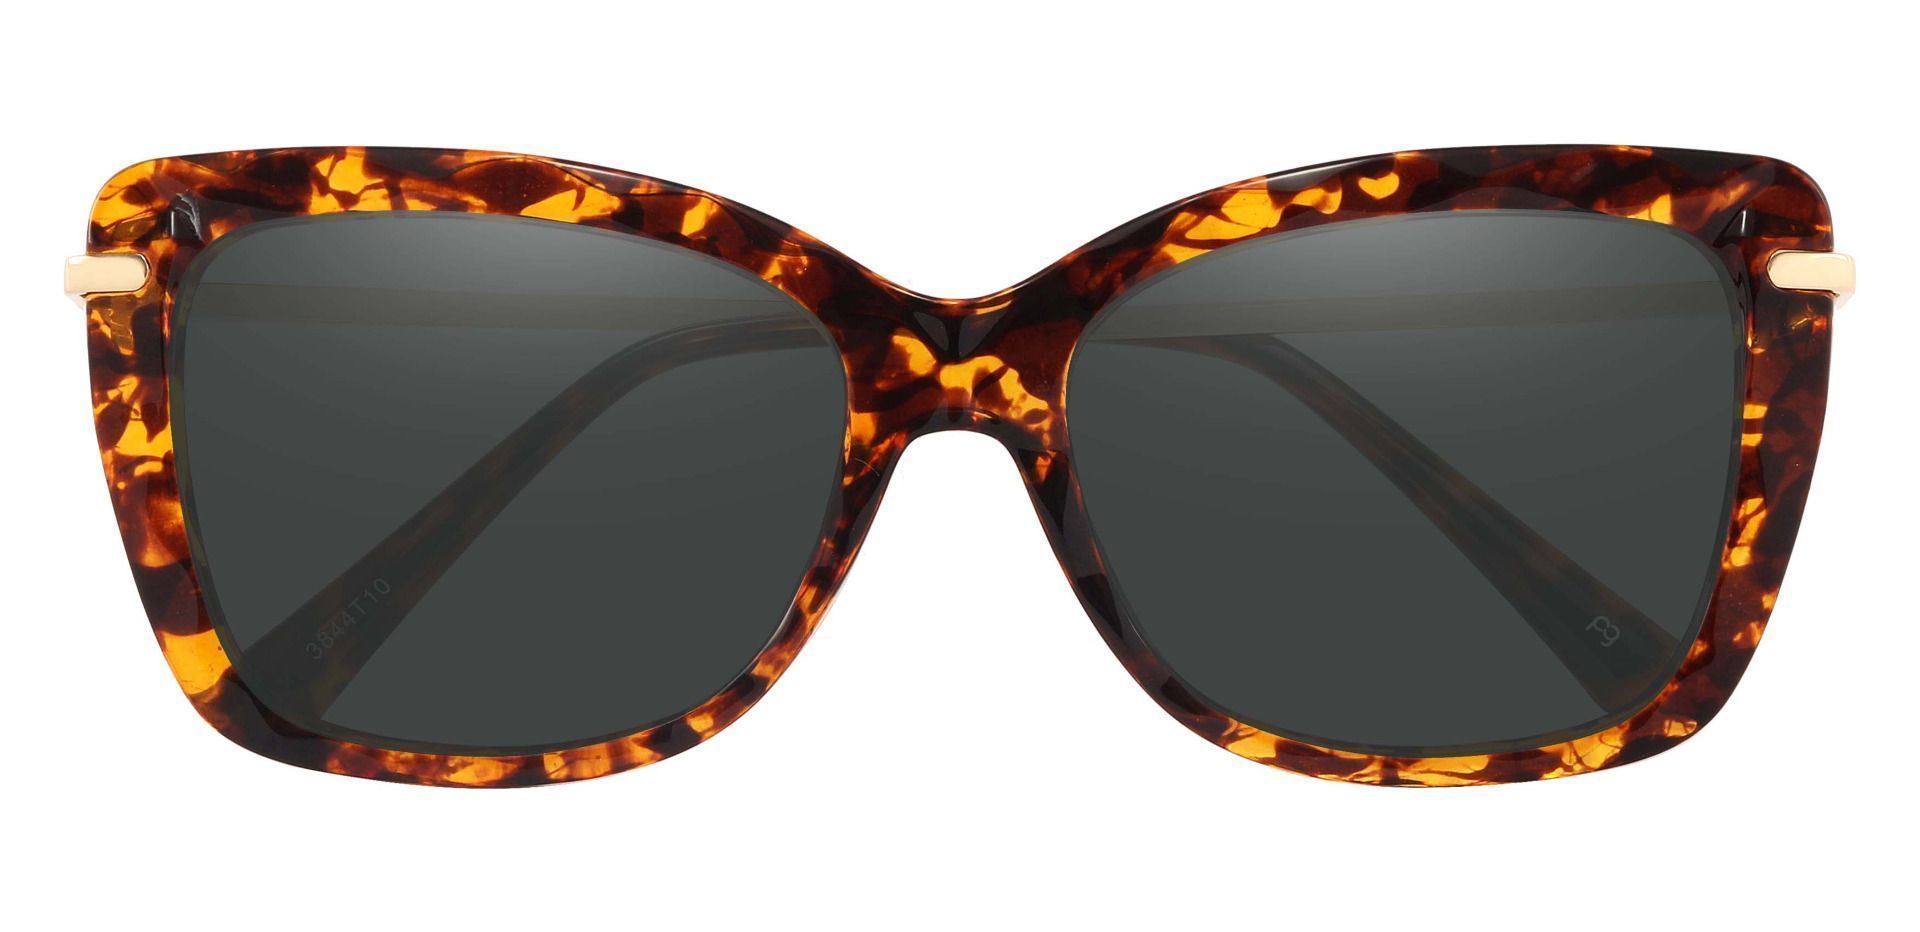 Shoshanna Rectangle Prescription Sunglasses - Tortoise Frame With Gray Lenses